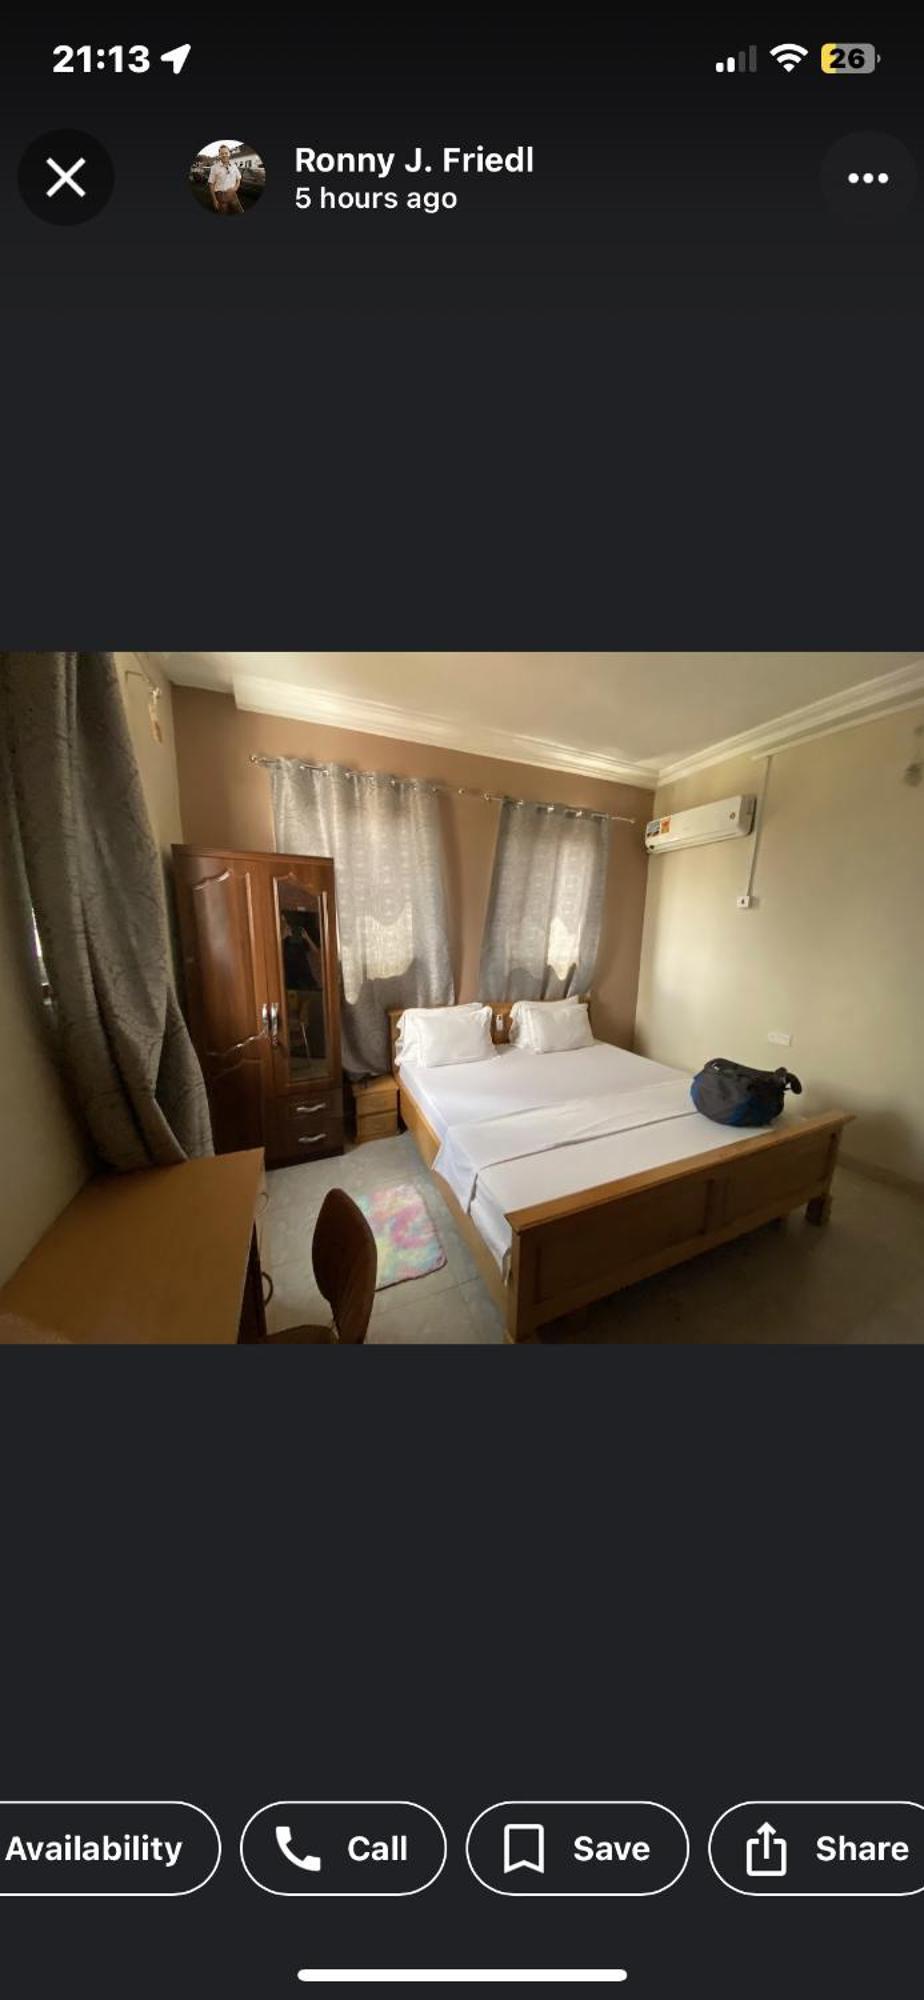 Patayo Lodge Kumasi Extérieur photo